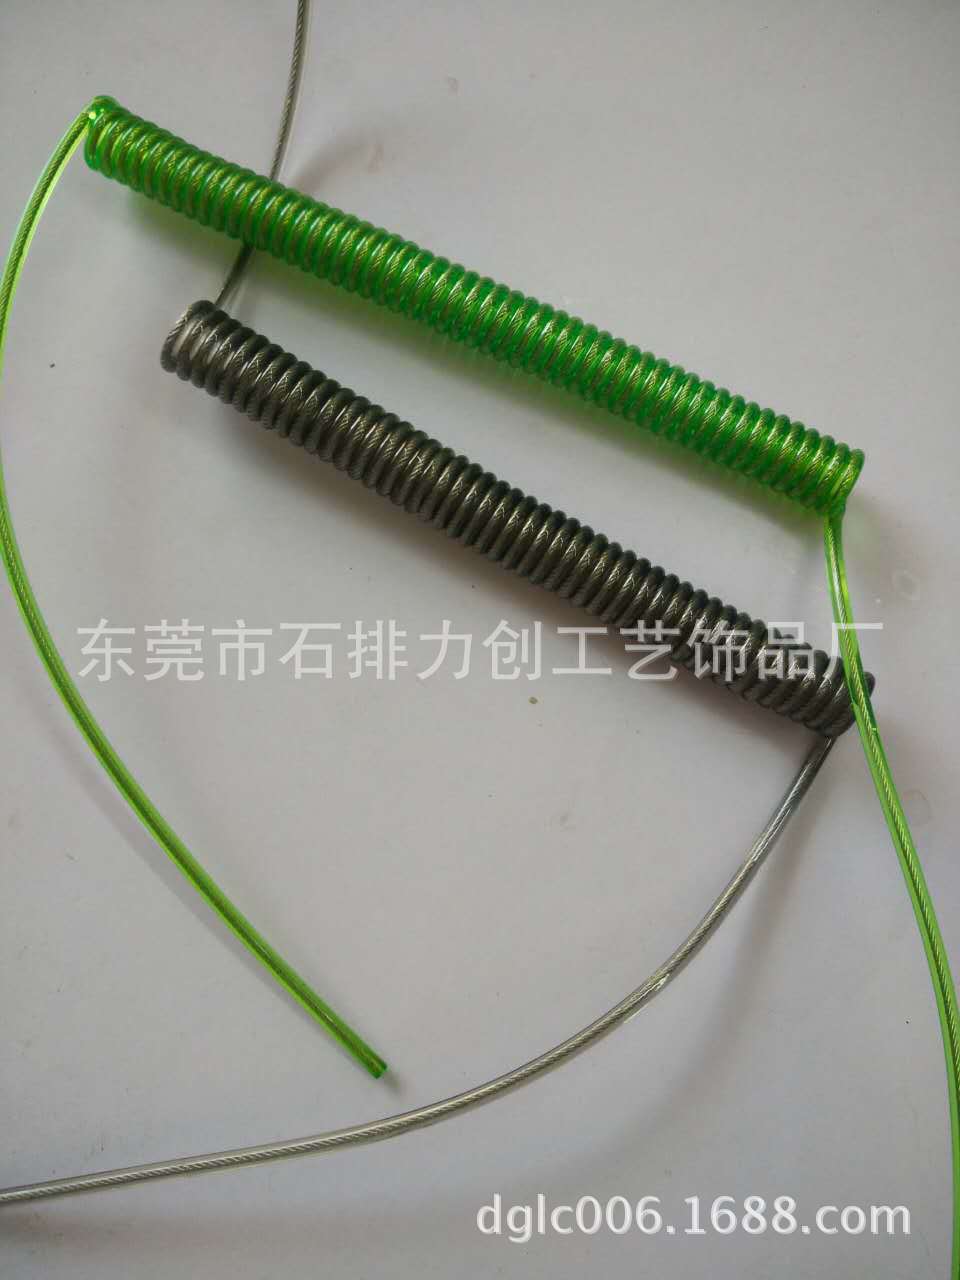 专业生产包钢丝弹簧绳 包芯工具绳 检具绳